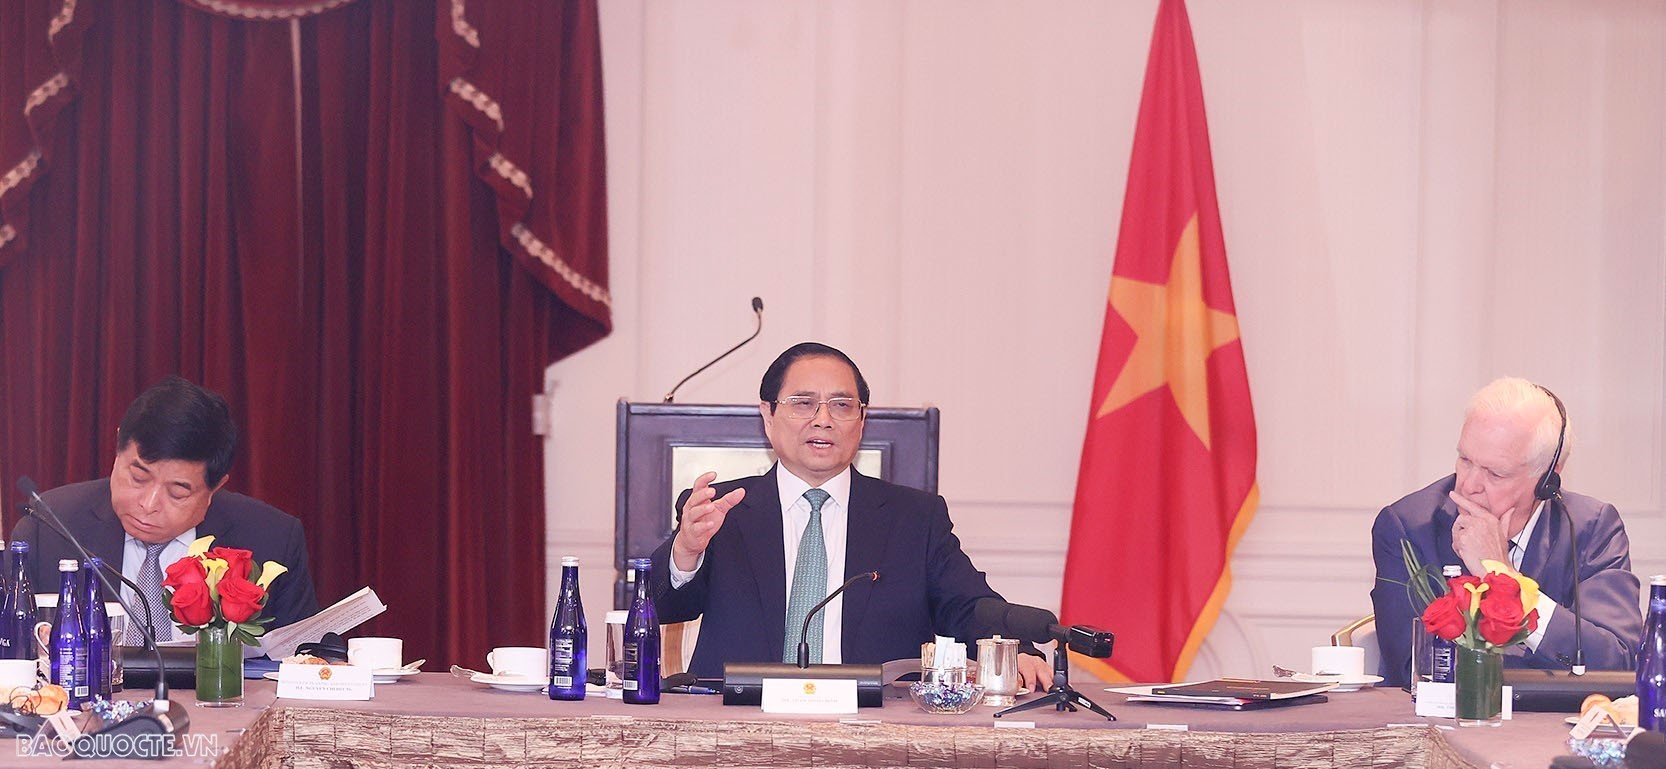 Các Giáo sư Hoa Kỳ hiến kế giúp Việt Nam phát triển kinh tế